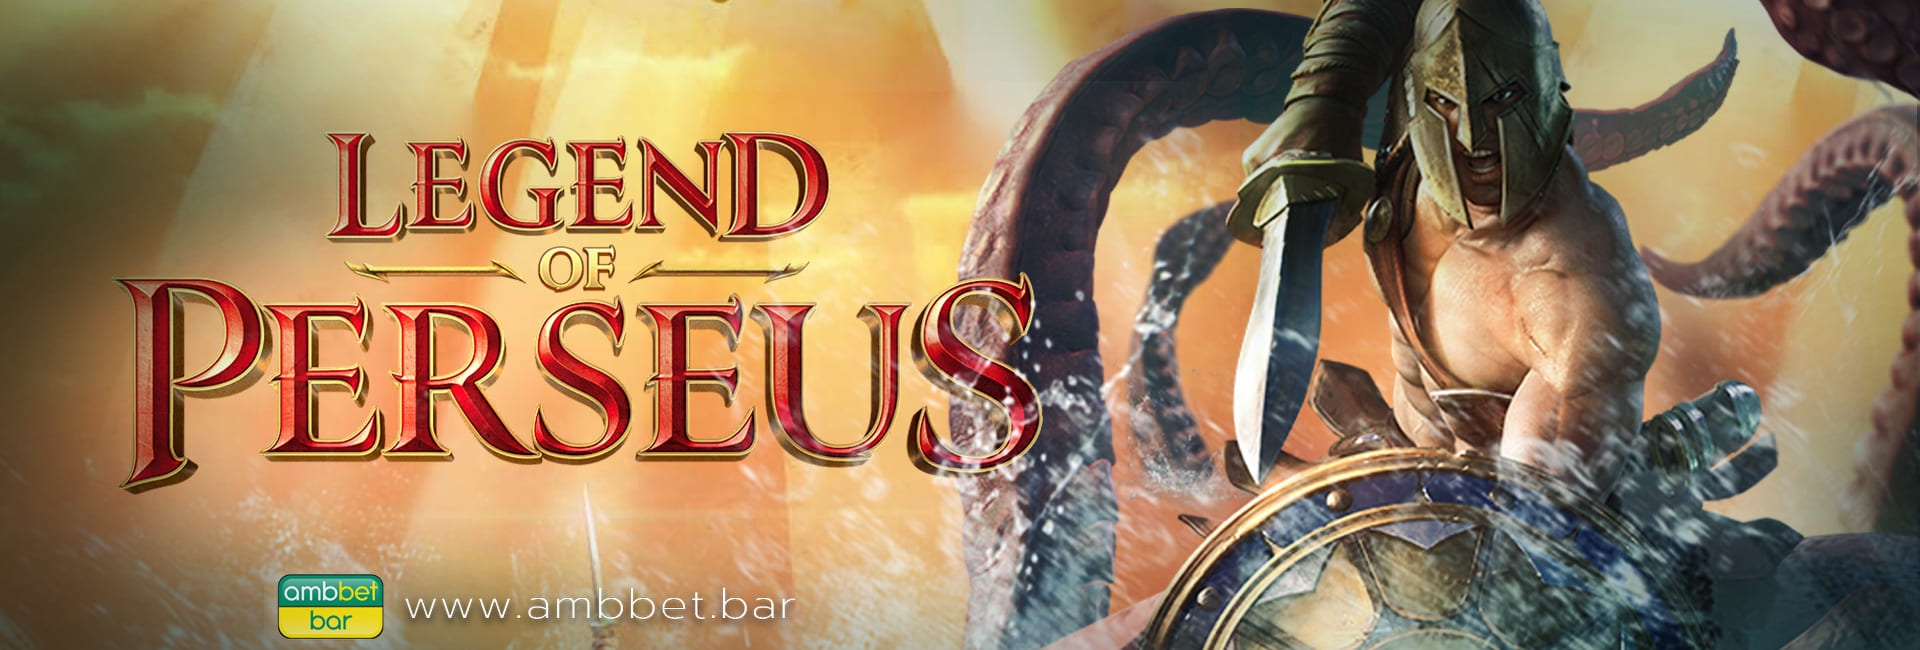 Legend of Perseus banner